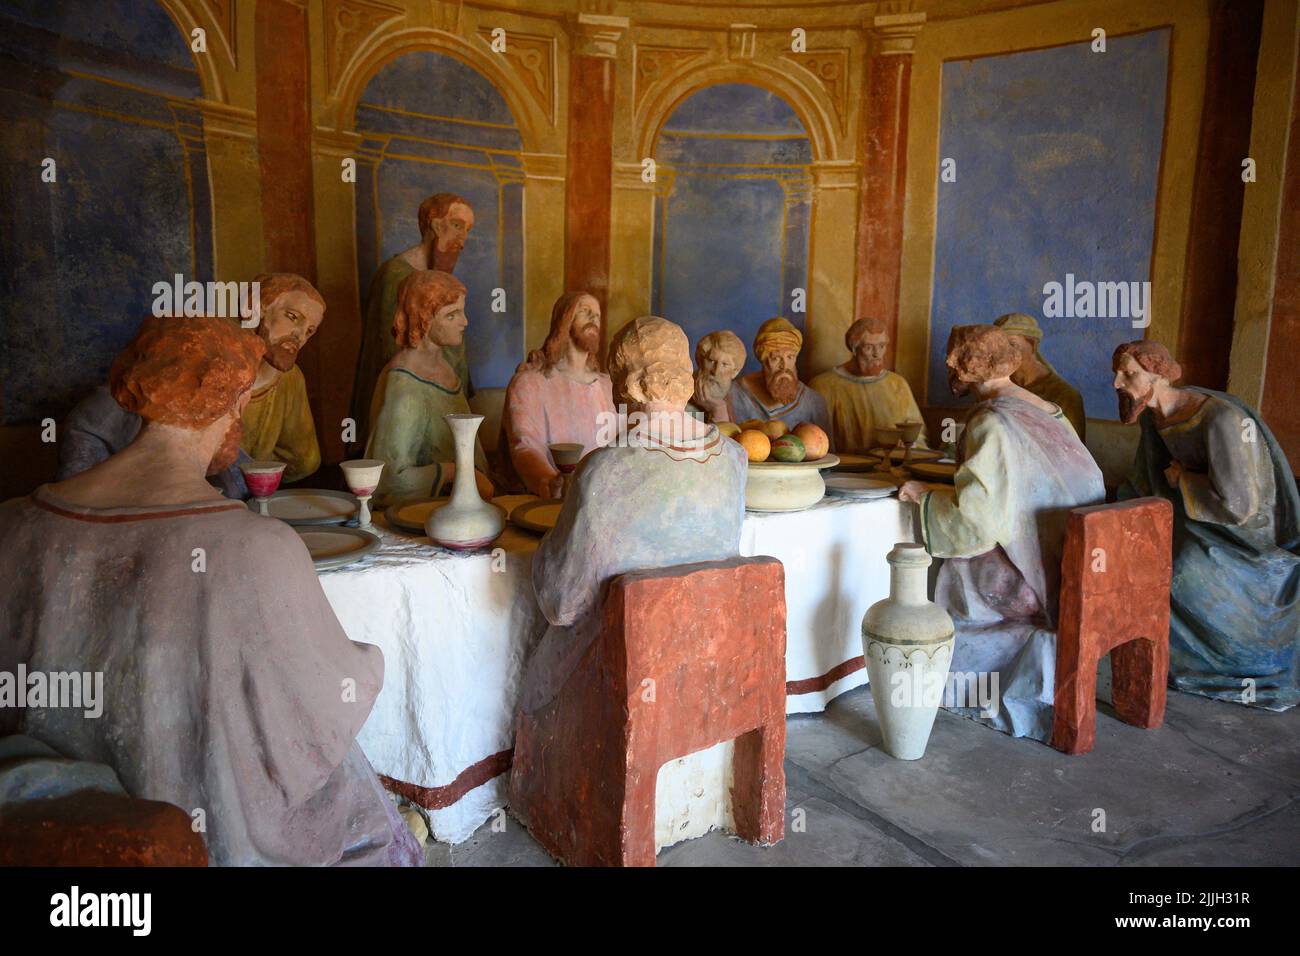 Mai 2022, Mongardino, Italie statues en bois représentant le dernier souper de jésus datant de 1700 Banque D'Images